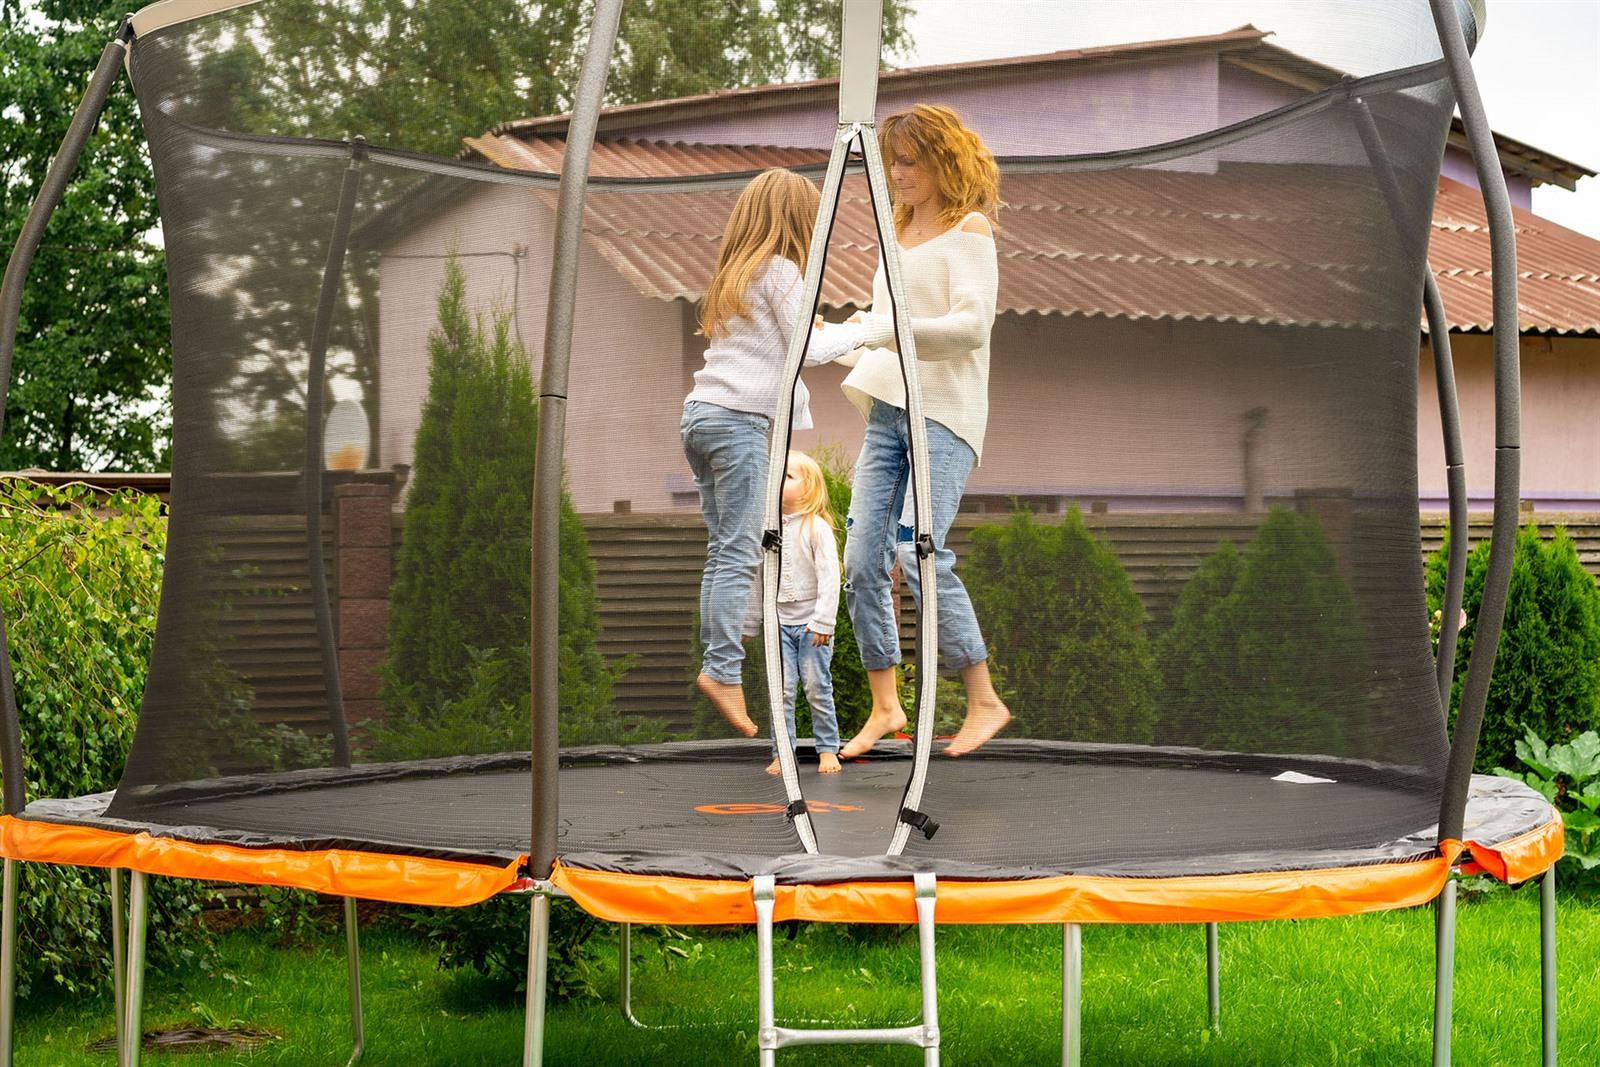 verdwijnen schaduw patroon 5 beste trampolines 2023 vergelijken: Welke tuin trampoline kopen?